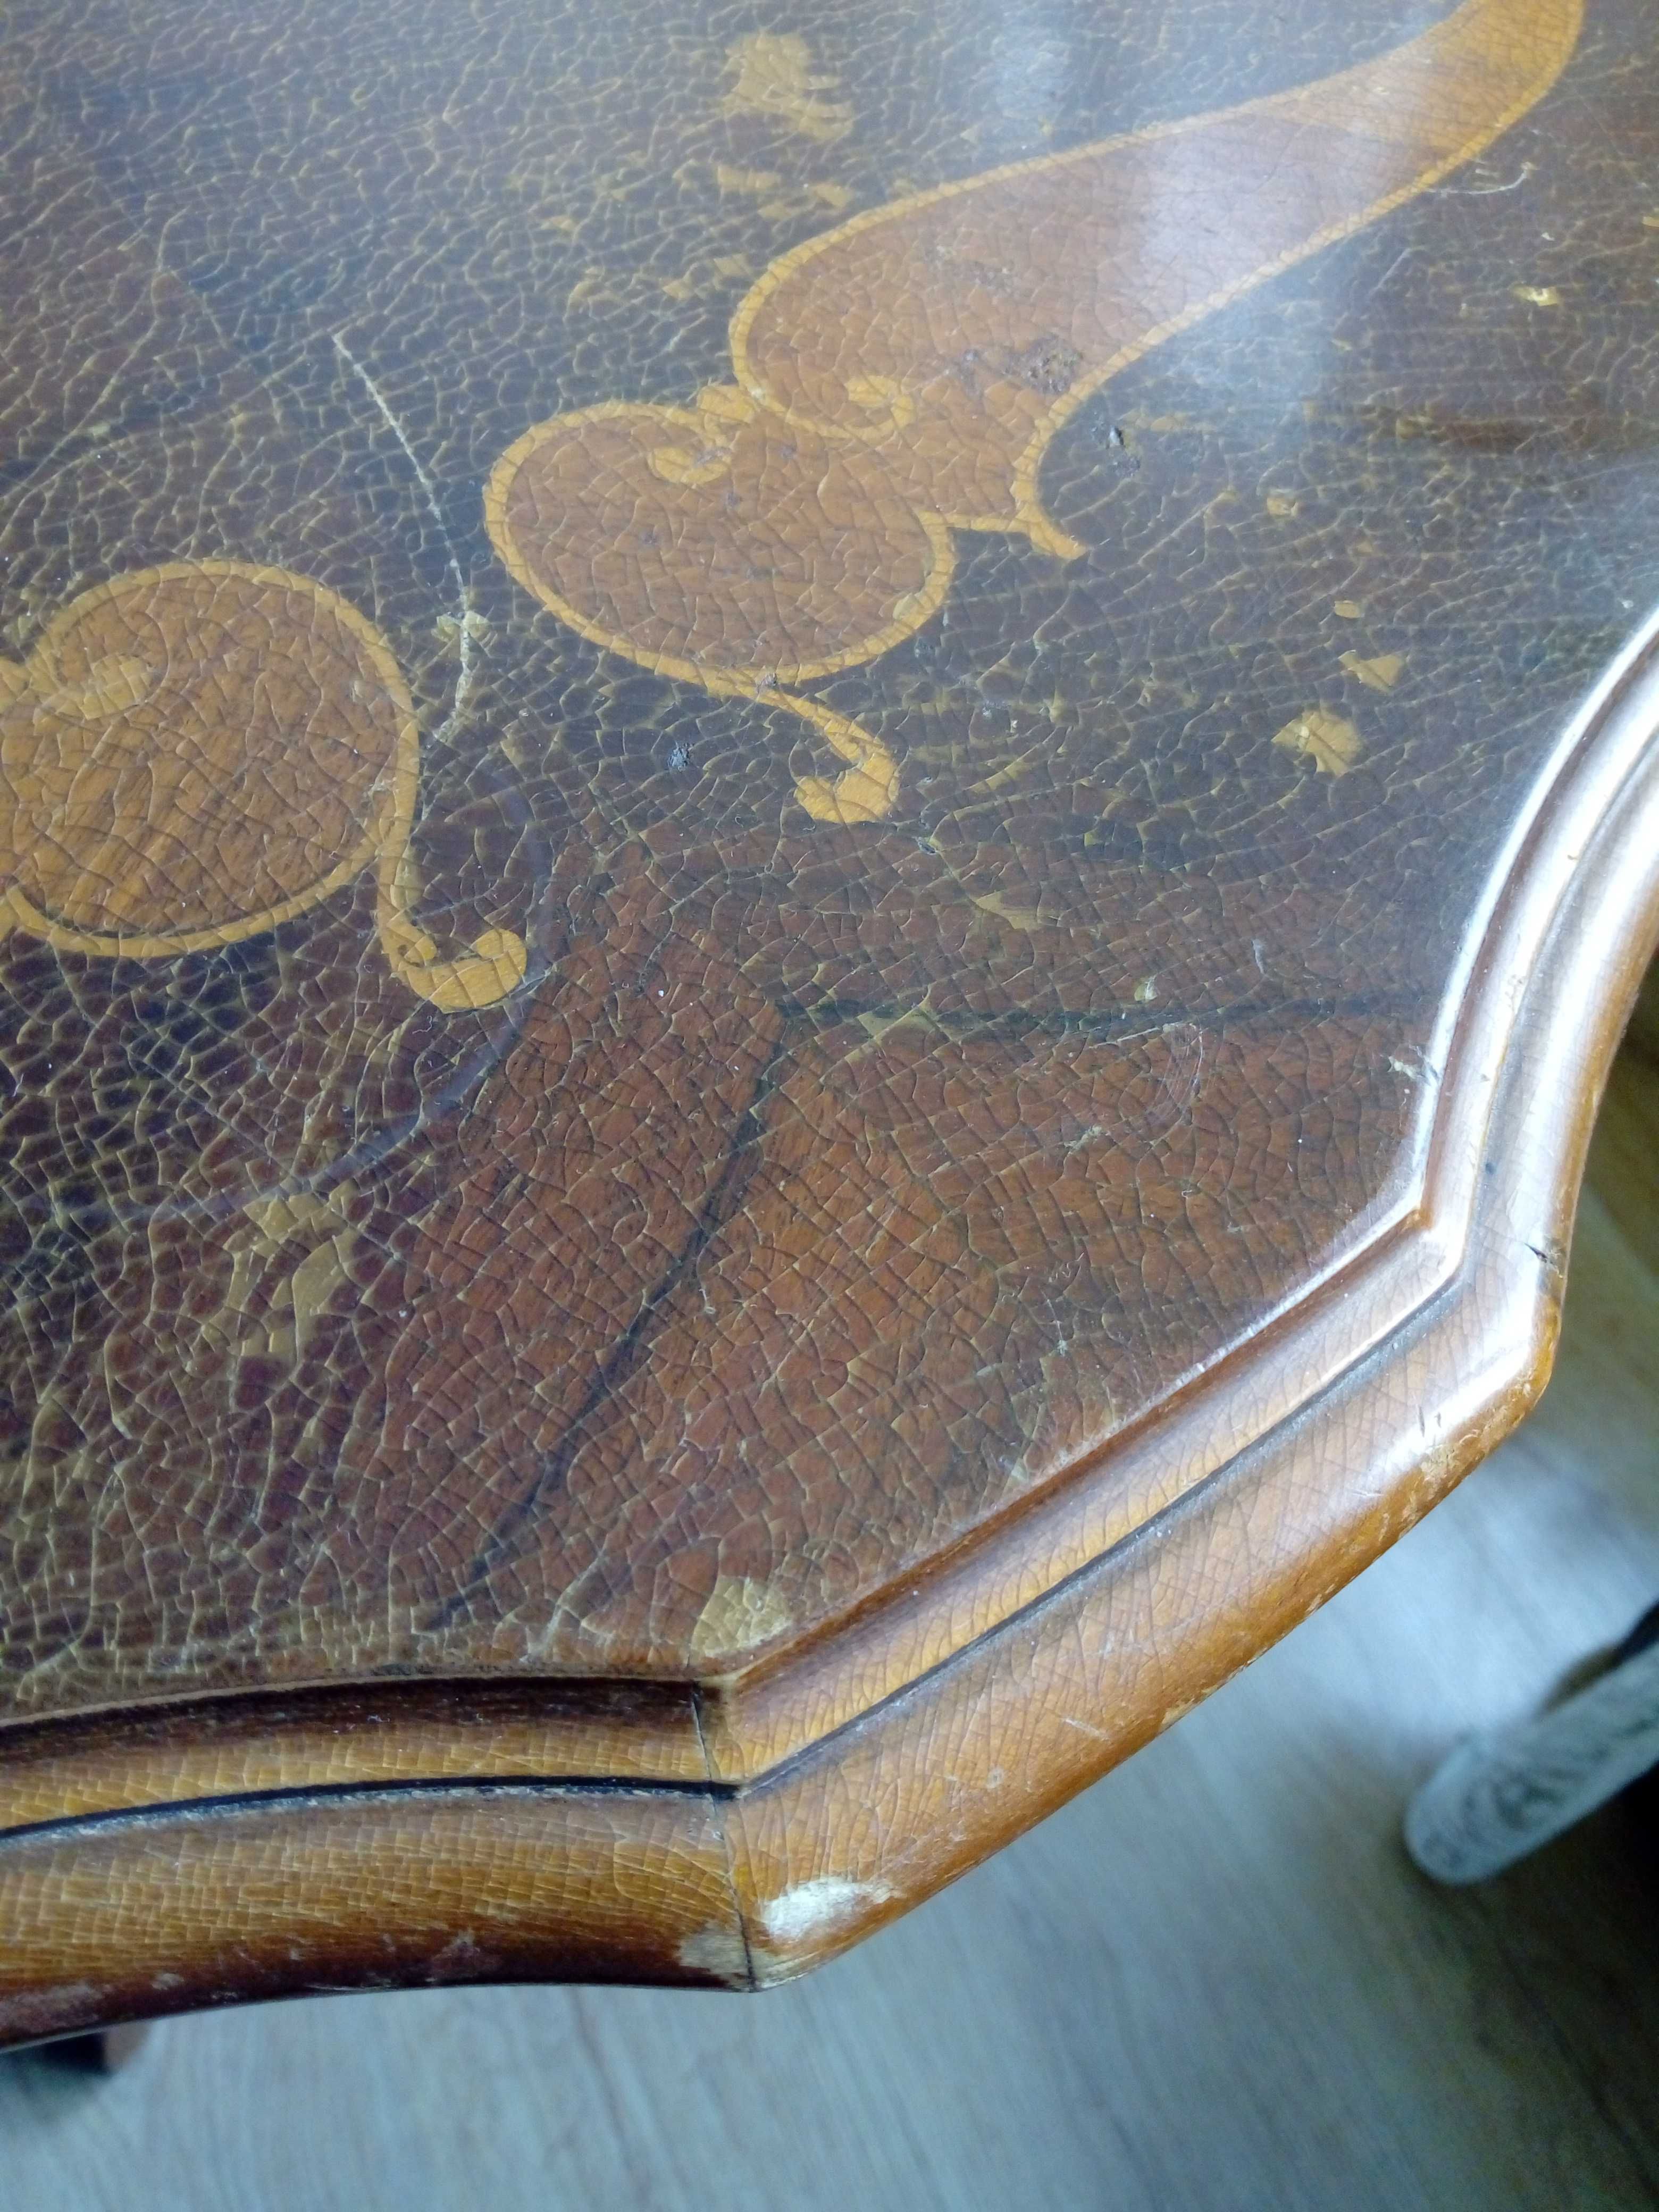 Stylowy stół drewniany z intarsją